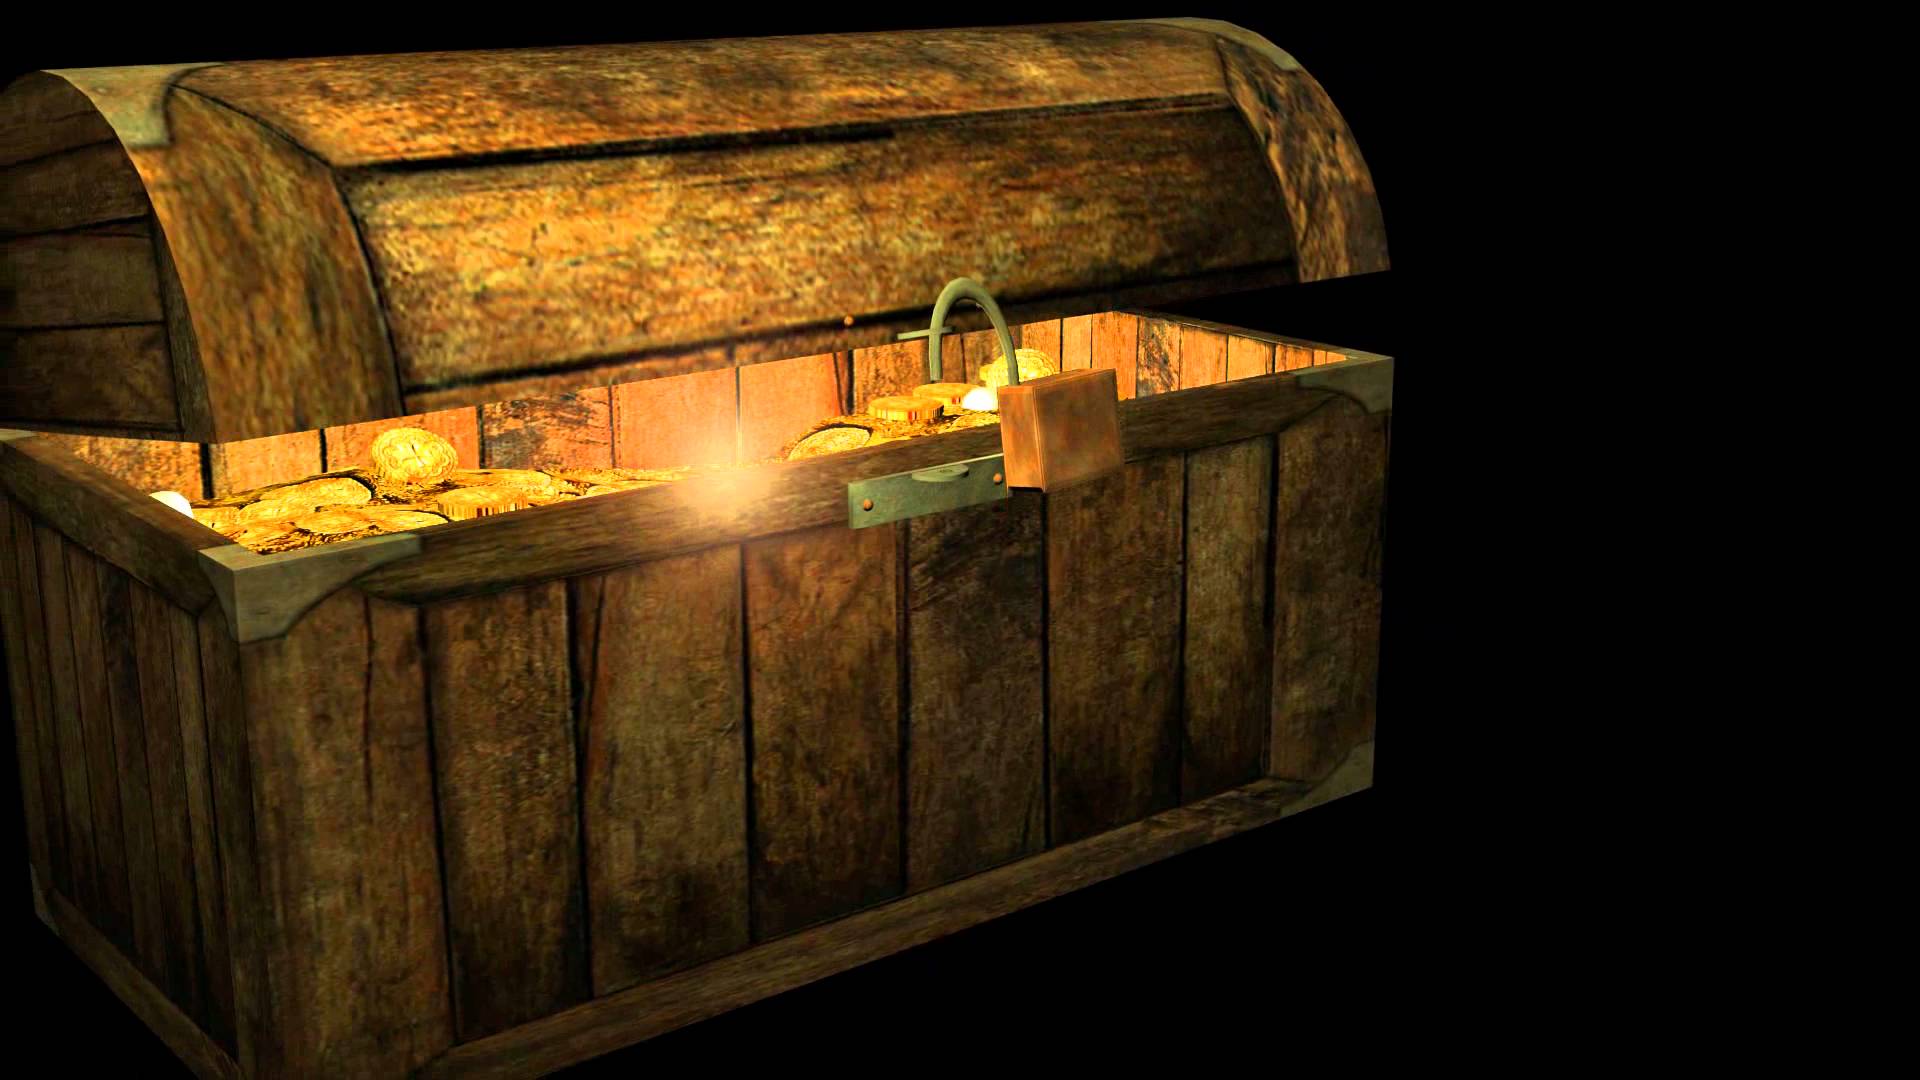 تصویر صندوقچه گنج با علائم مخفی در بازی های خفن ویدئویی